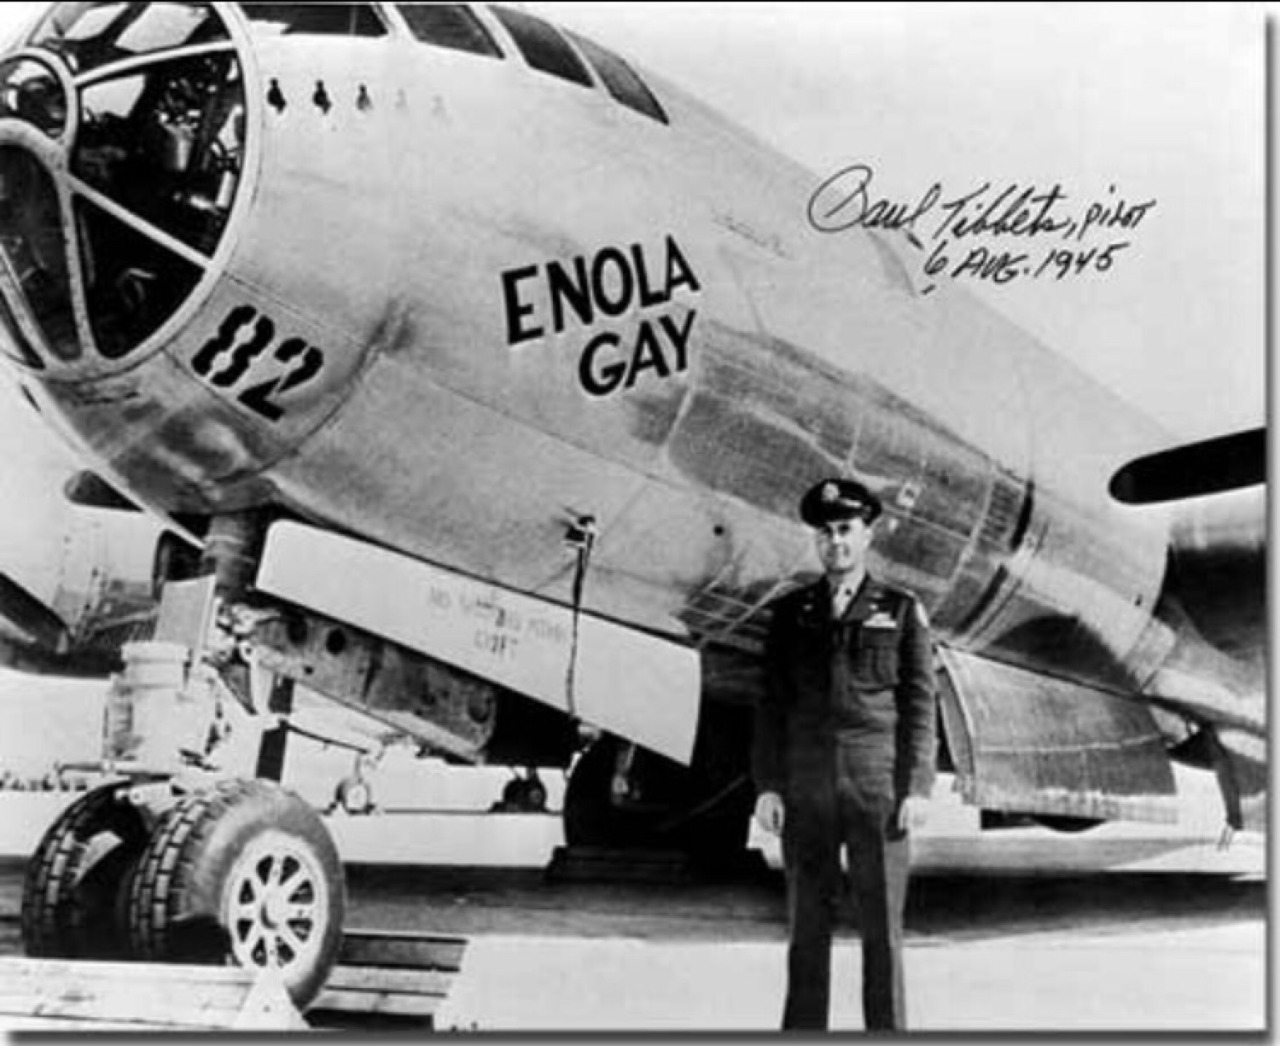 Enola Gay Aircraft 91